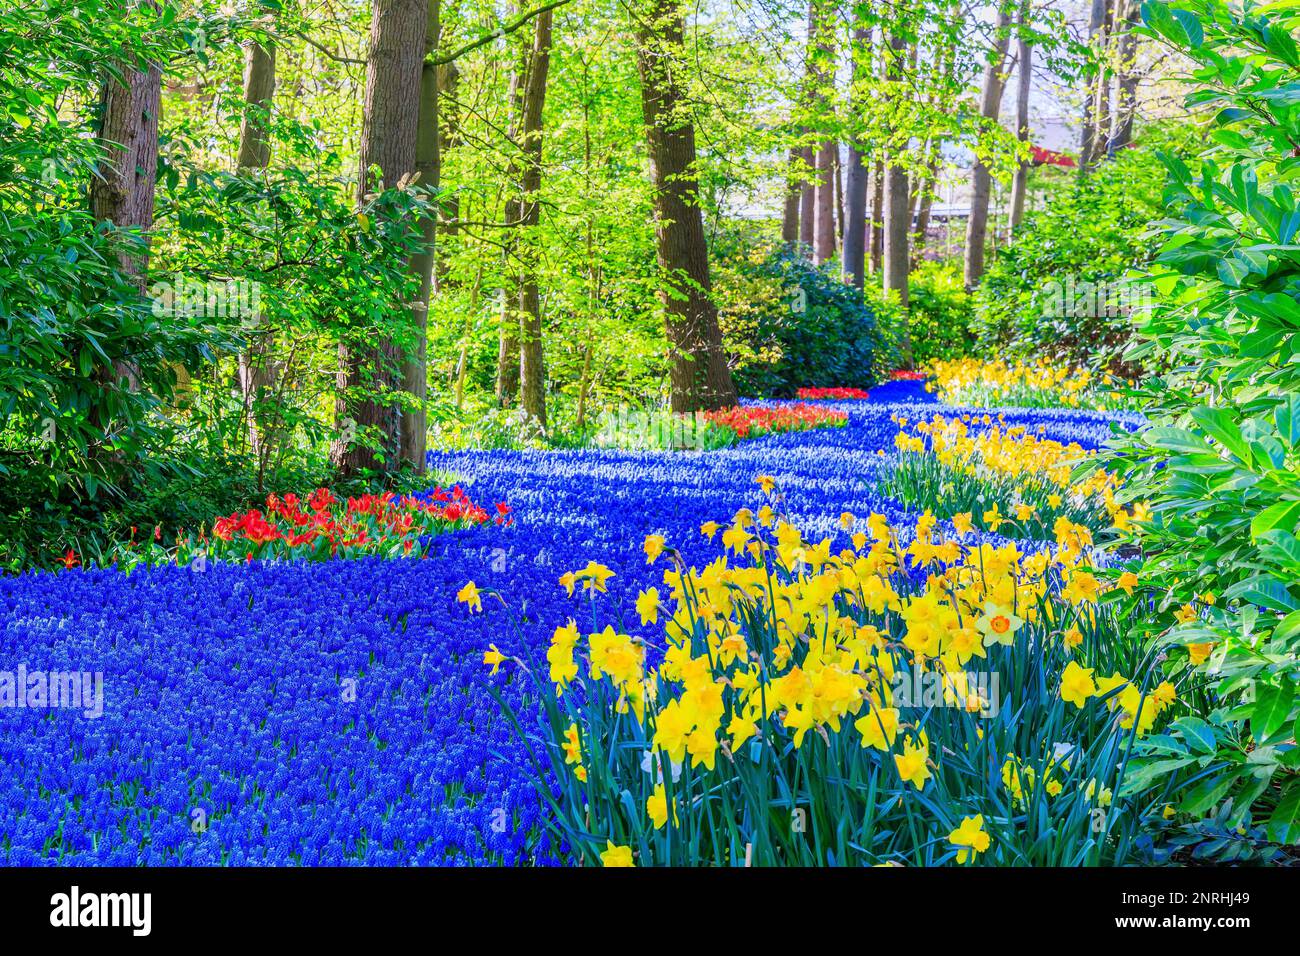 Blühendes farbenfrohes Blumenbeet im öffentlichen Blumengarten. Lisse, Holland, Niederlande. Stockfoto